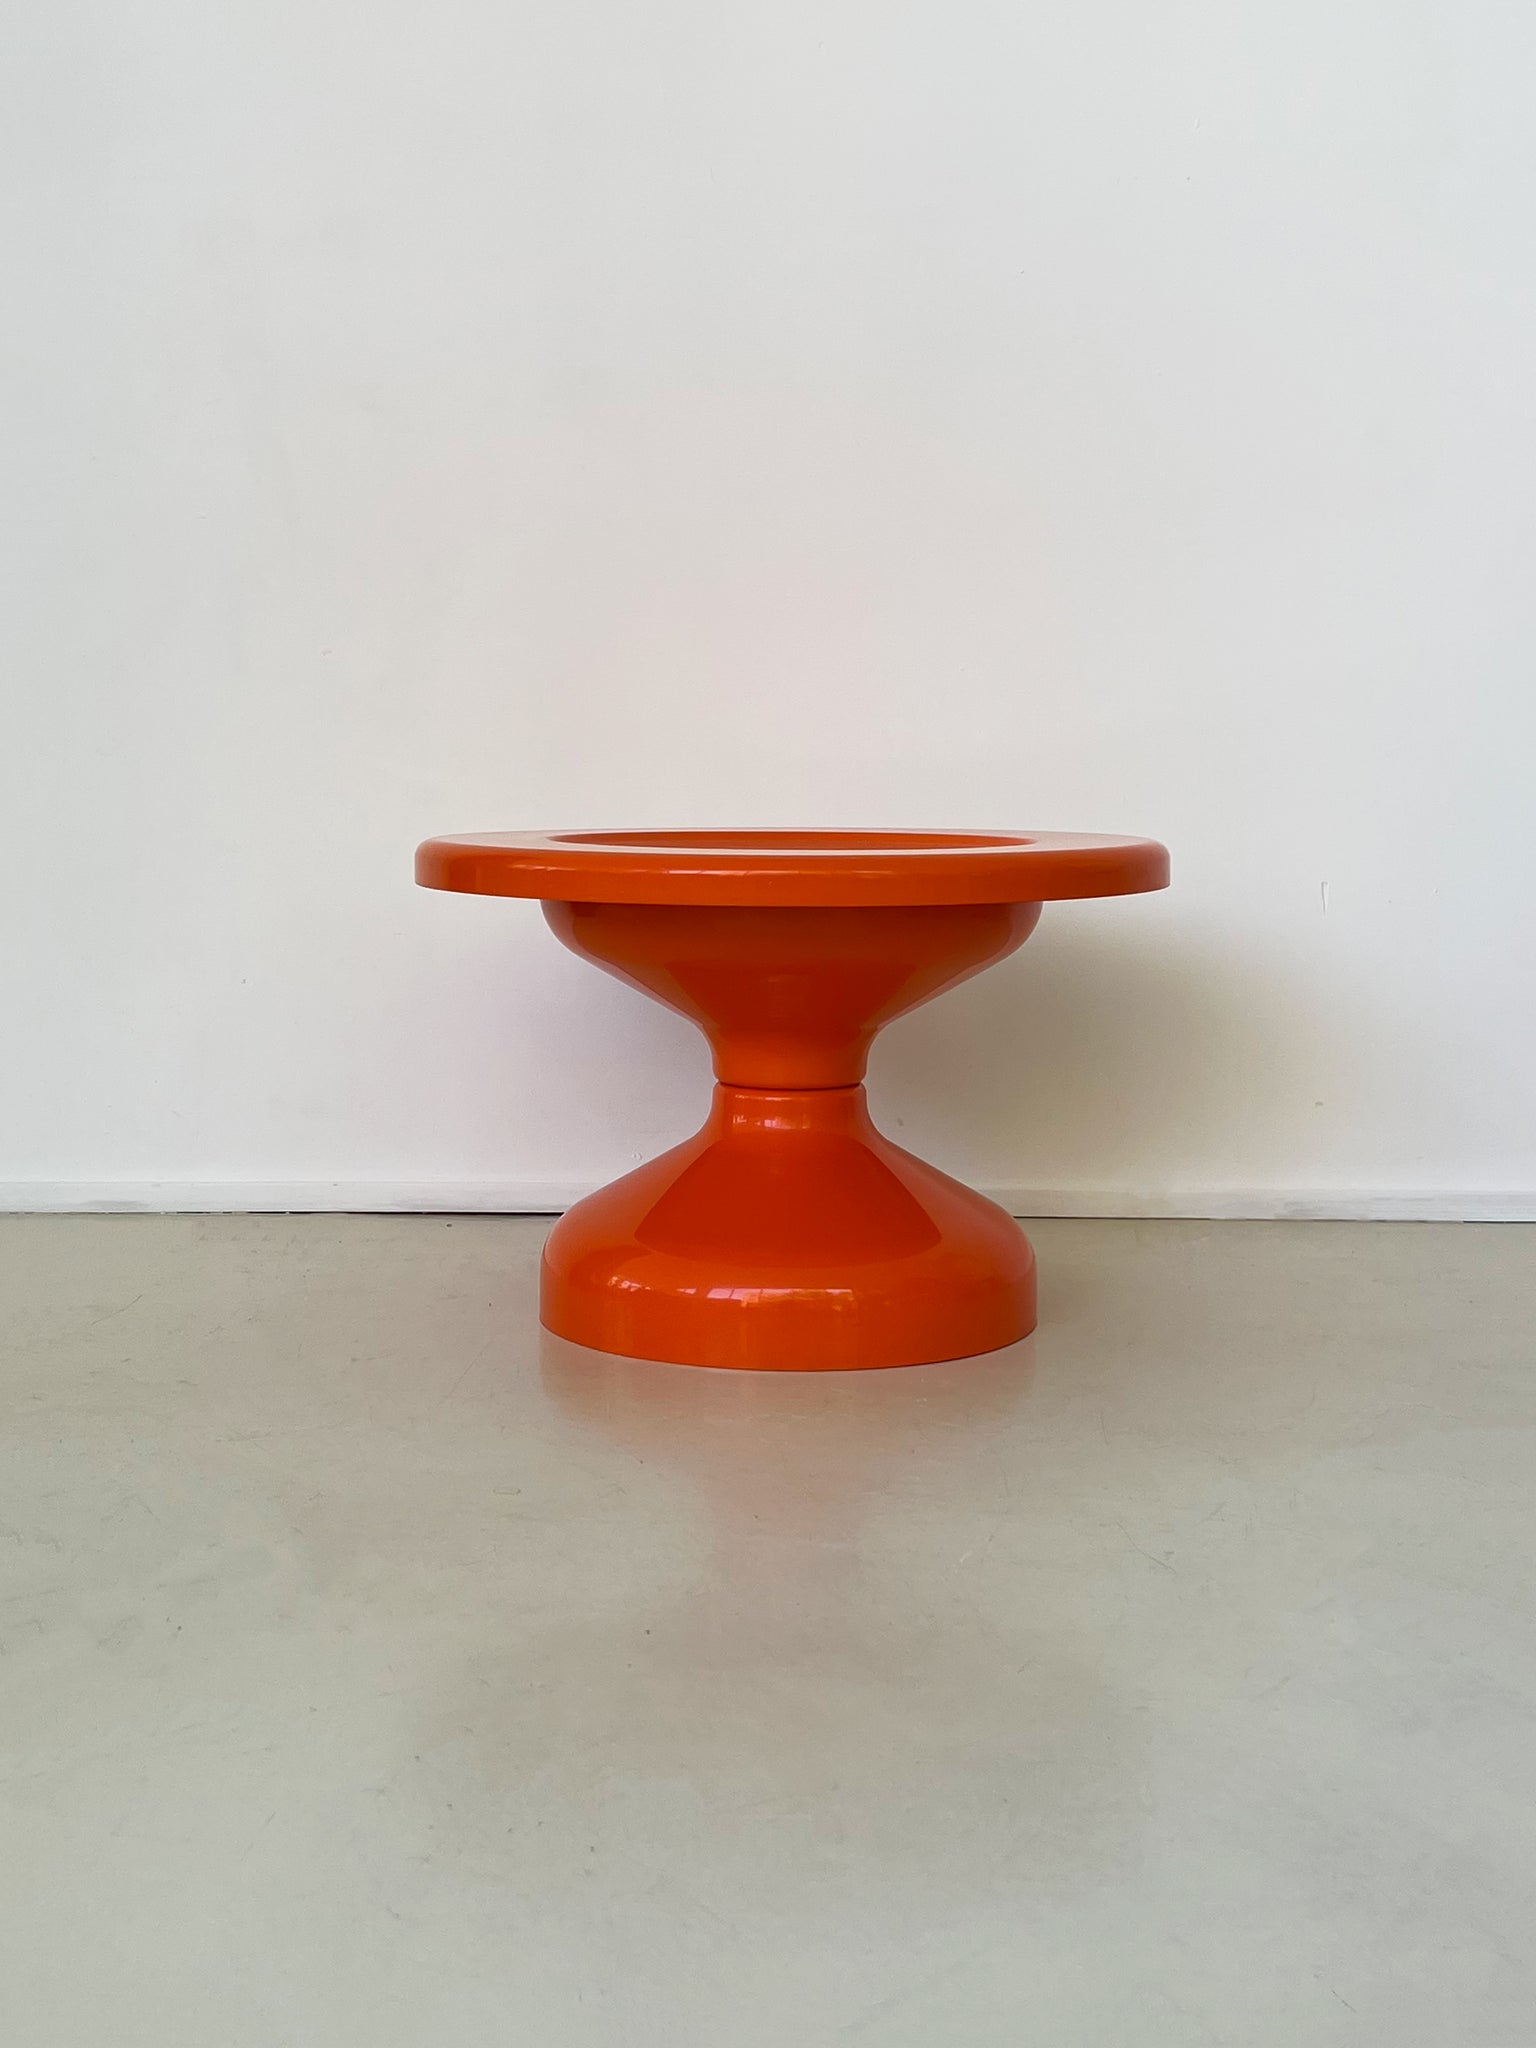 1960s Orange Rocchetto Table by A & P.G. Castiglioni for Kartell